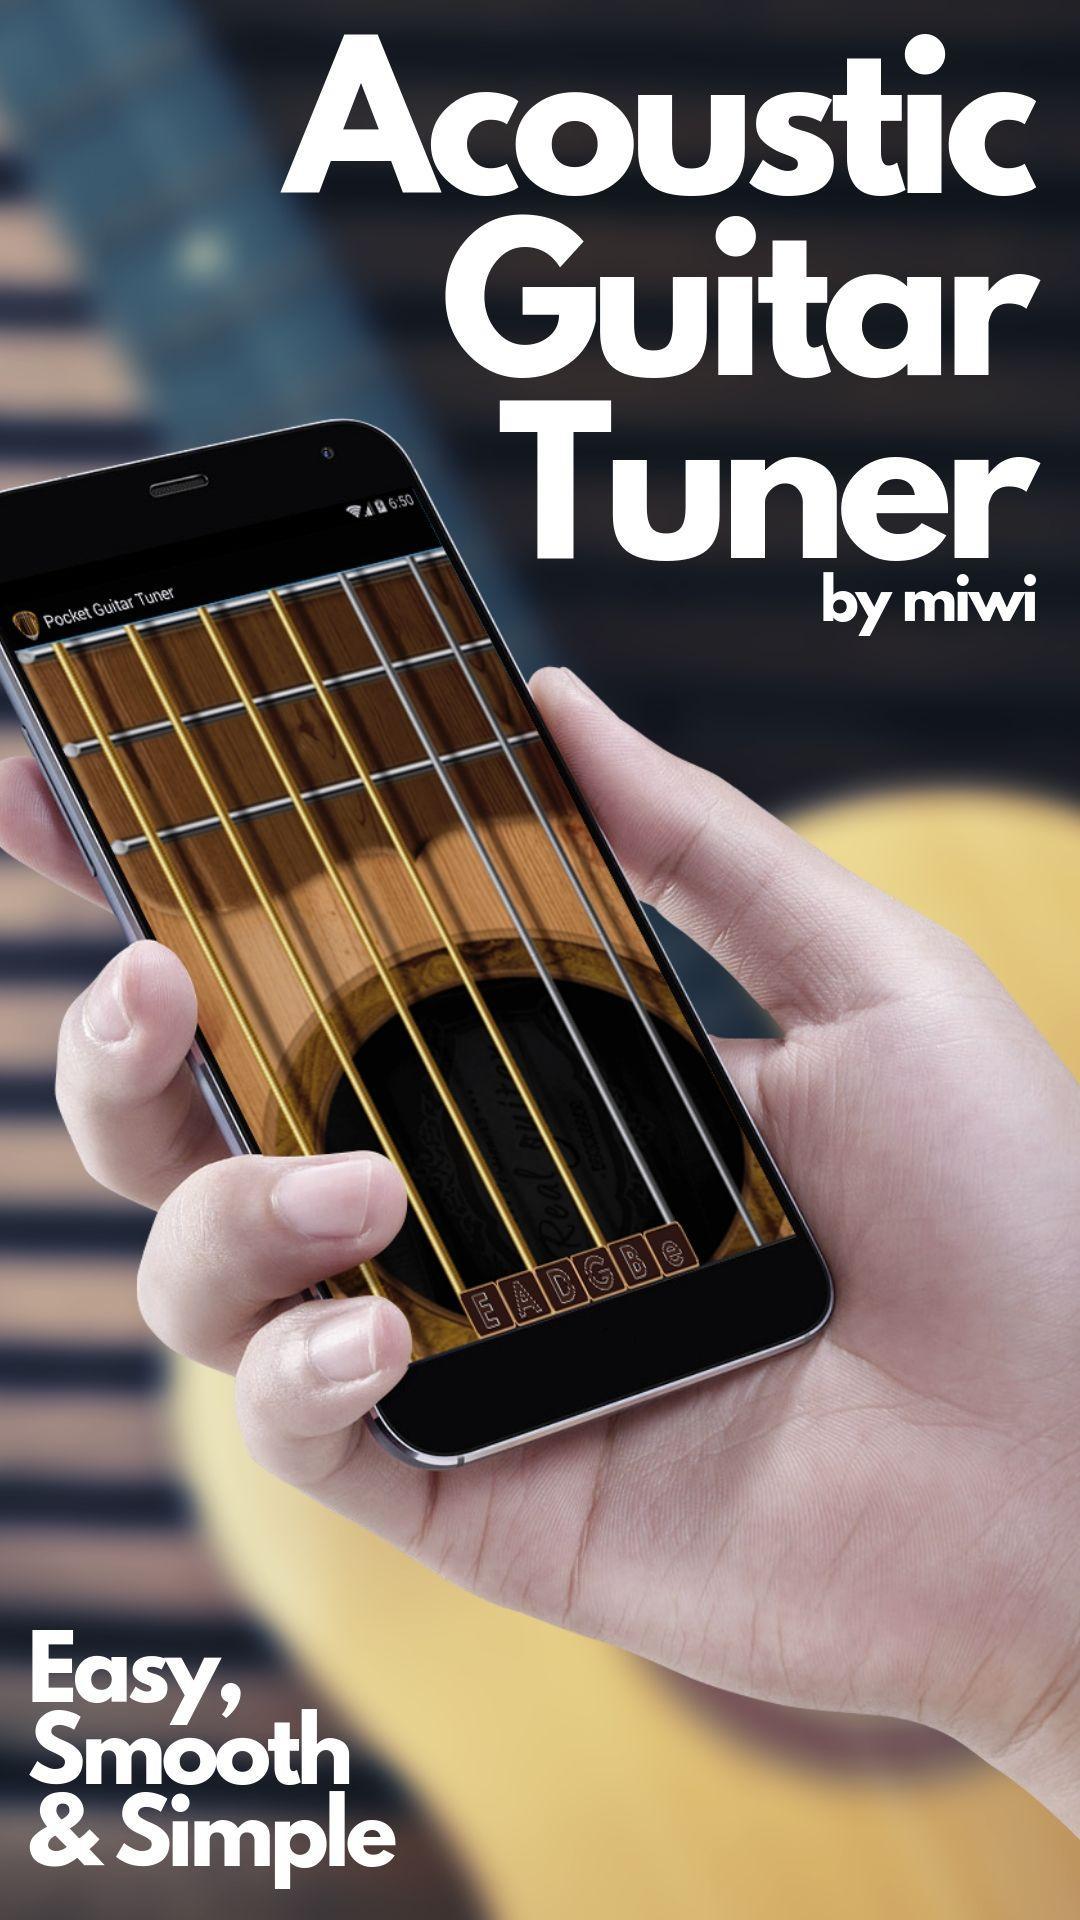 Real Guitar Tuner - Акустический Гитарный Тюнер Для Андроид.